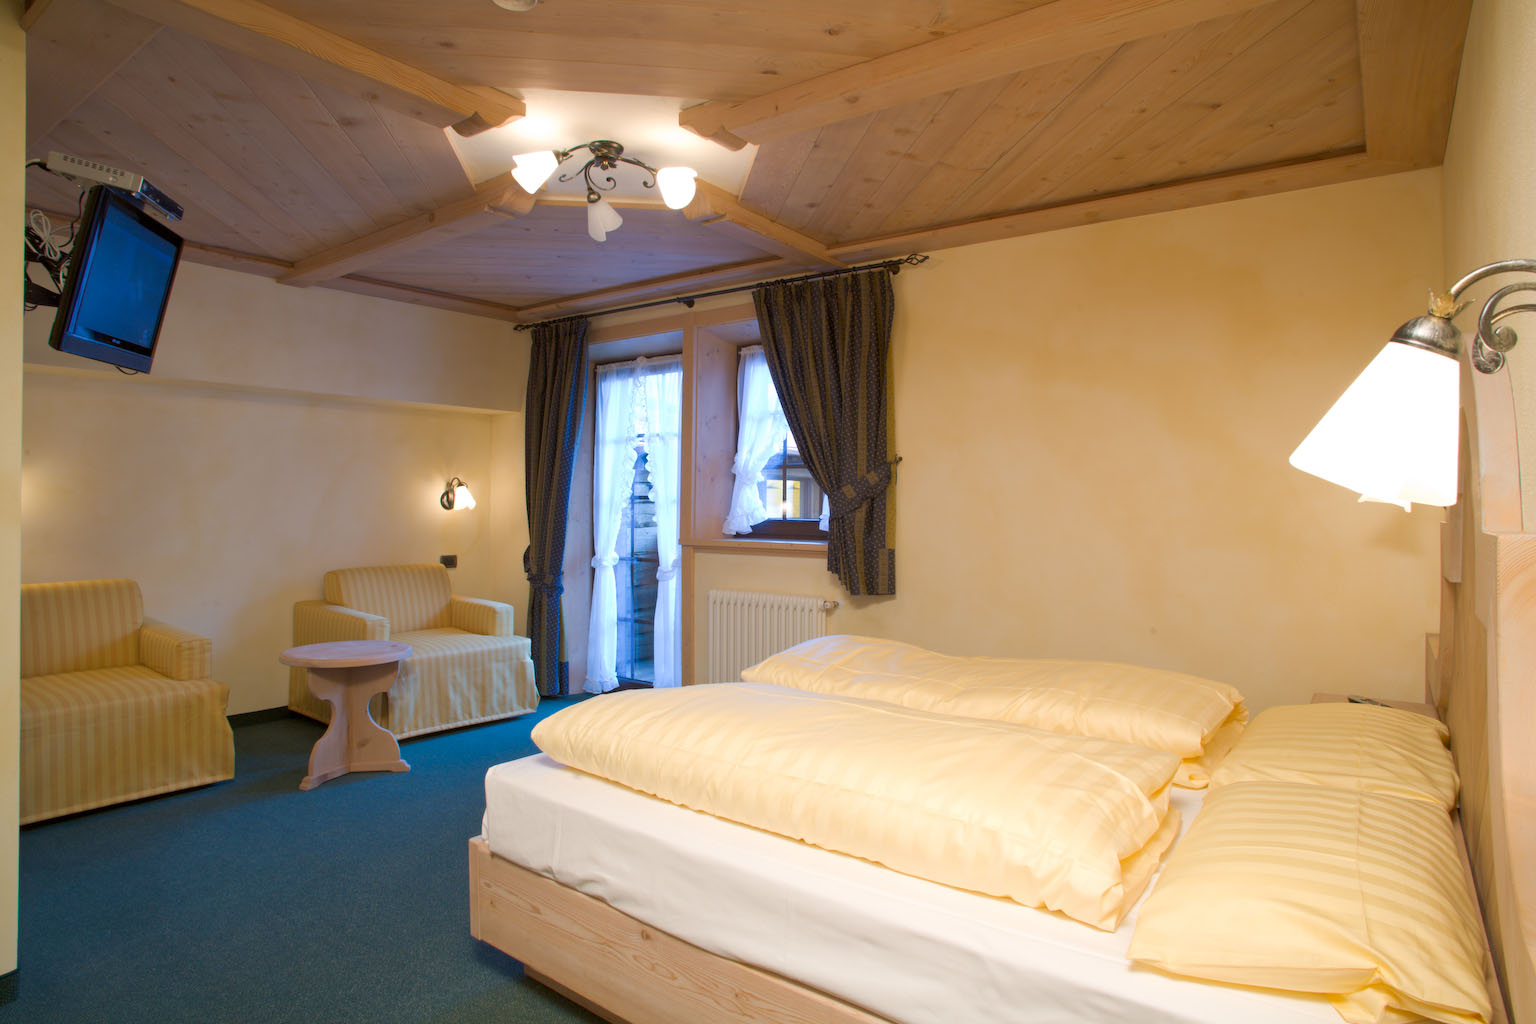 Hotel Capriolo - Via Borch, 96 - Room - Suite 1